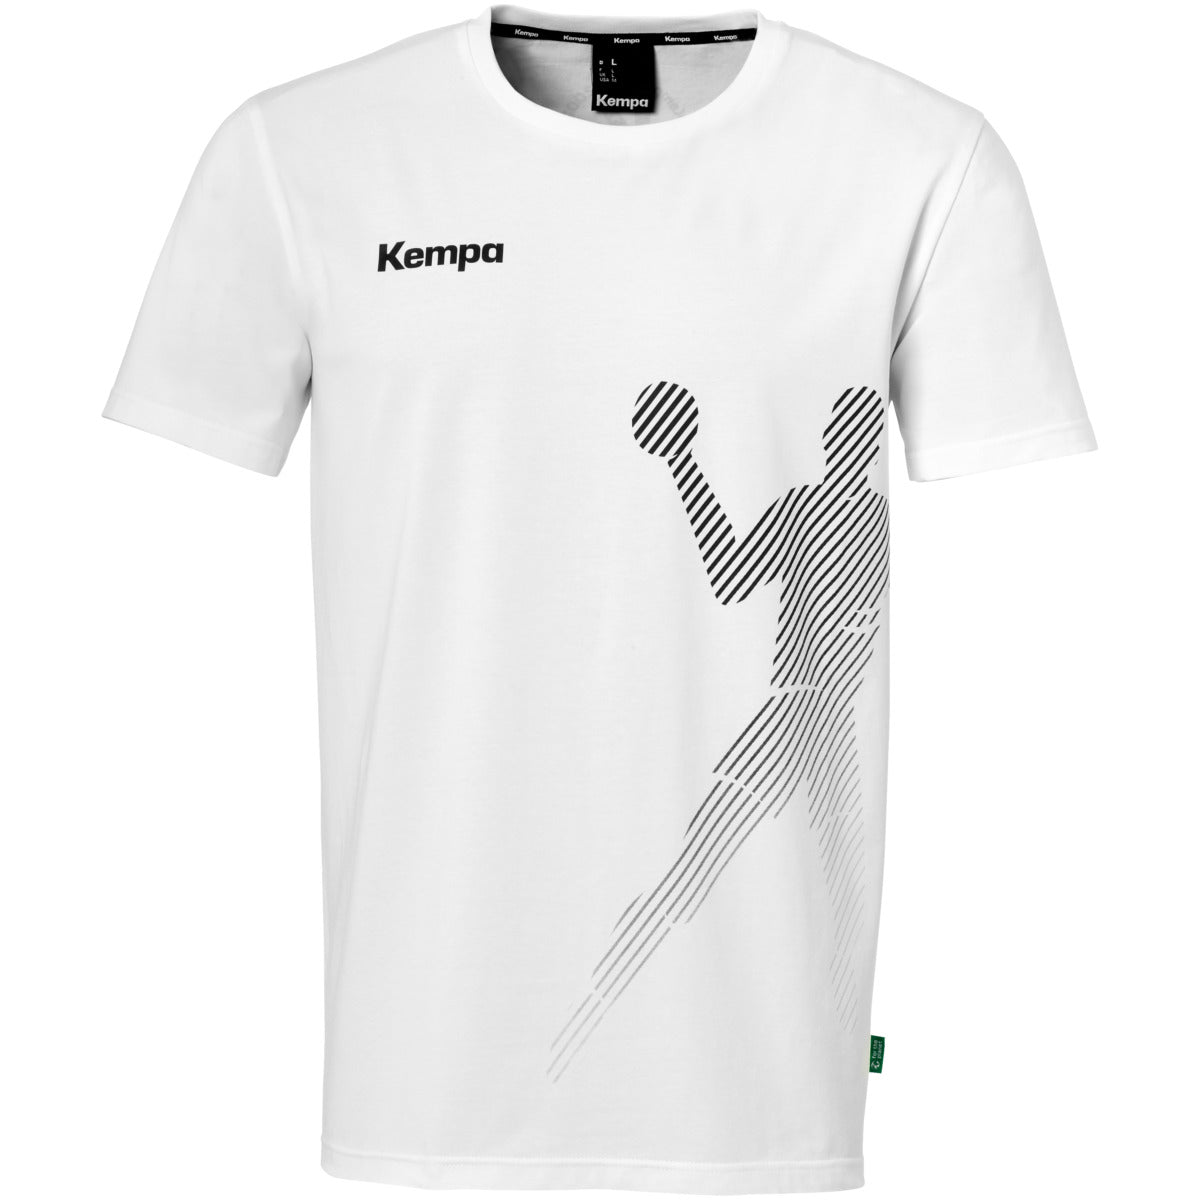 T-Shirt Black & White KEMPA stock